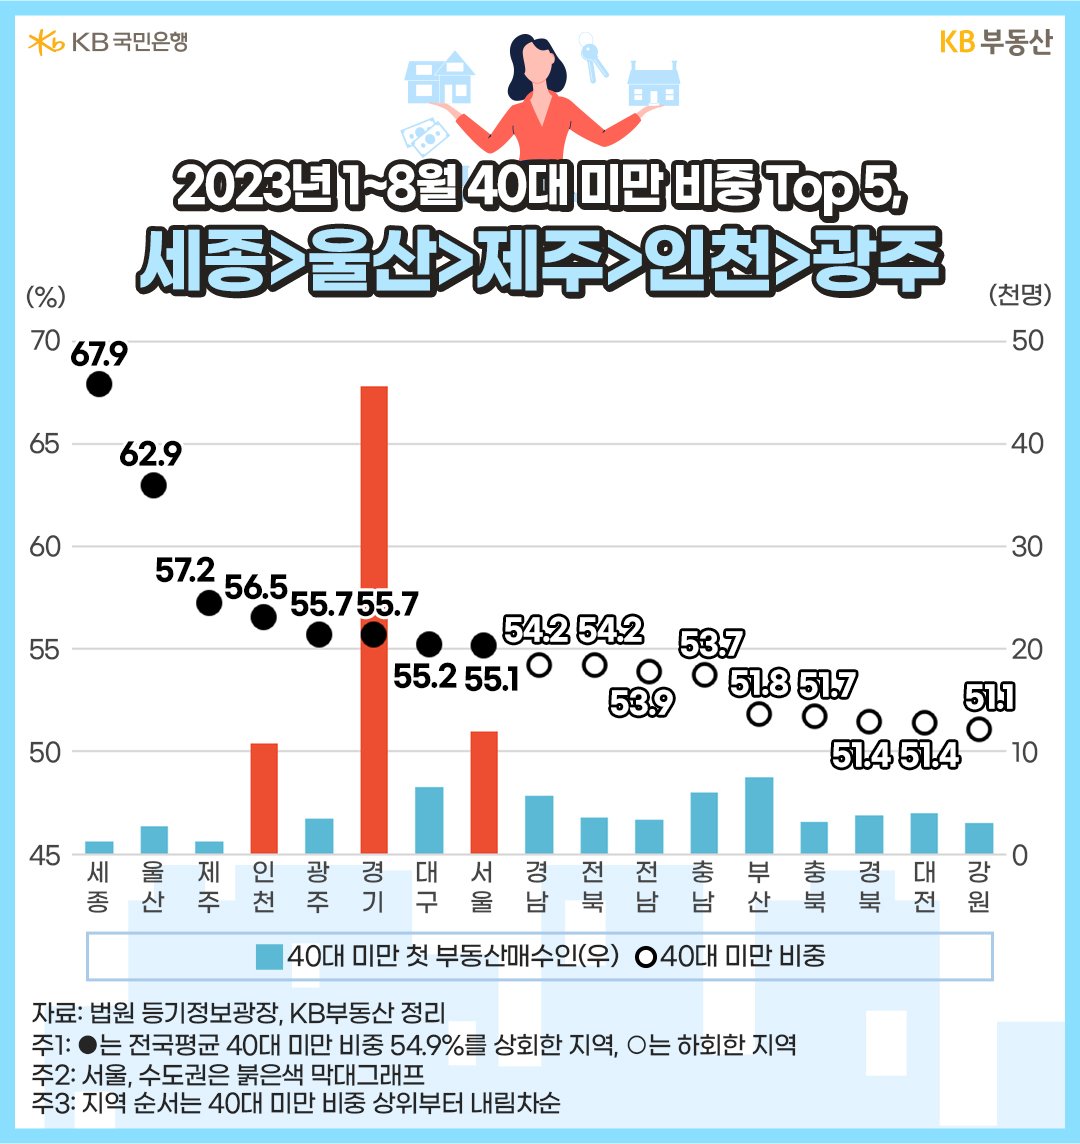 2023년 1~8월의 '40대 미만 첫 부동산매수인' 비중과 수를 지역별로 나타낸 그래프. 경기도권 등 수도권과 서울, 인천에서 40대 미만 매수인의 수가 매우 높게 관측됨.